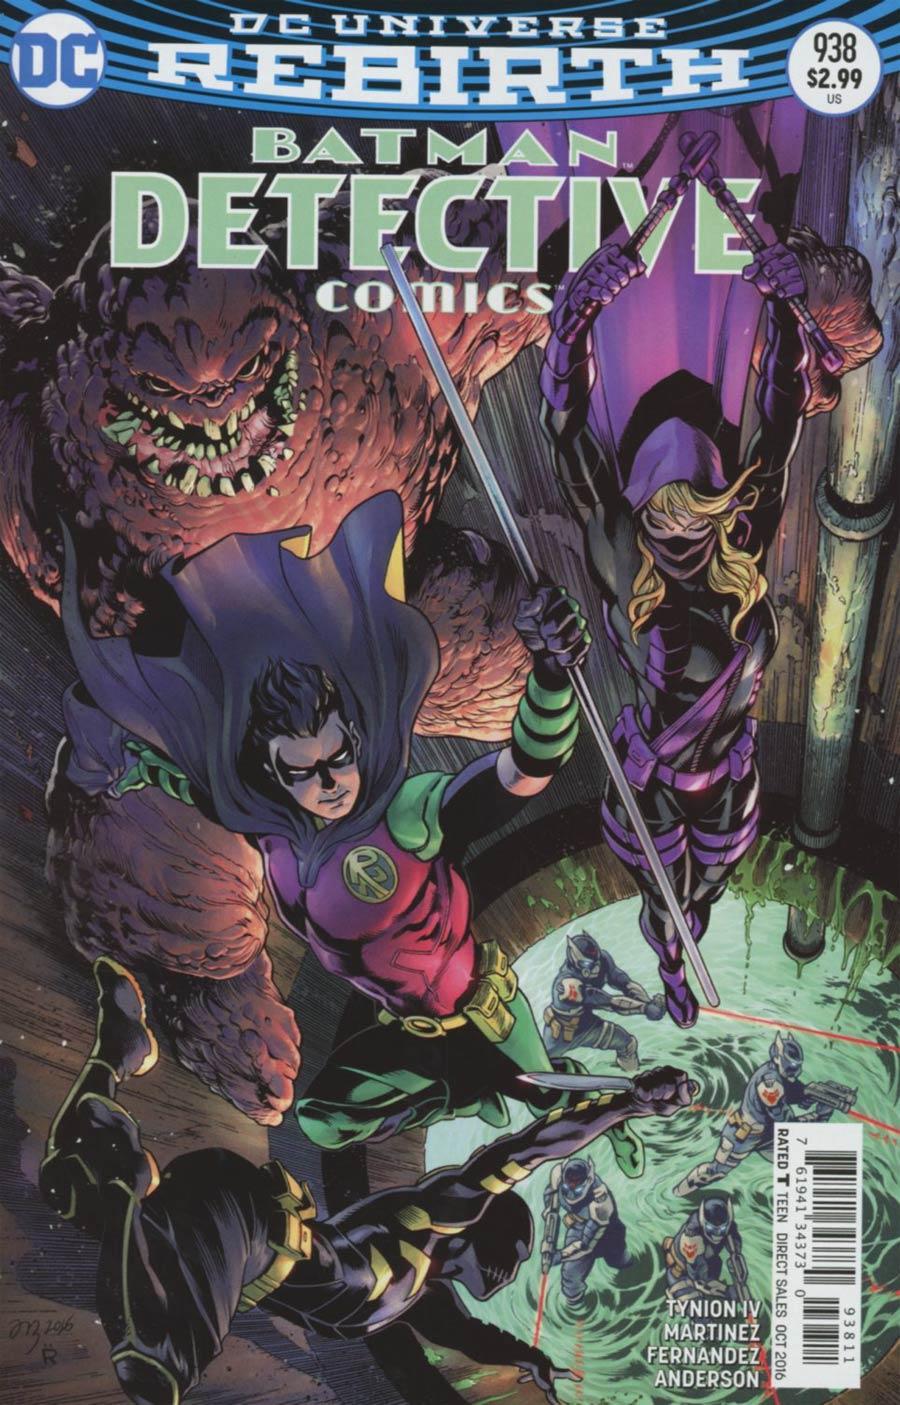 Detective Comics Vol. 2 #938